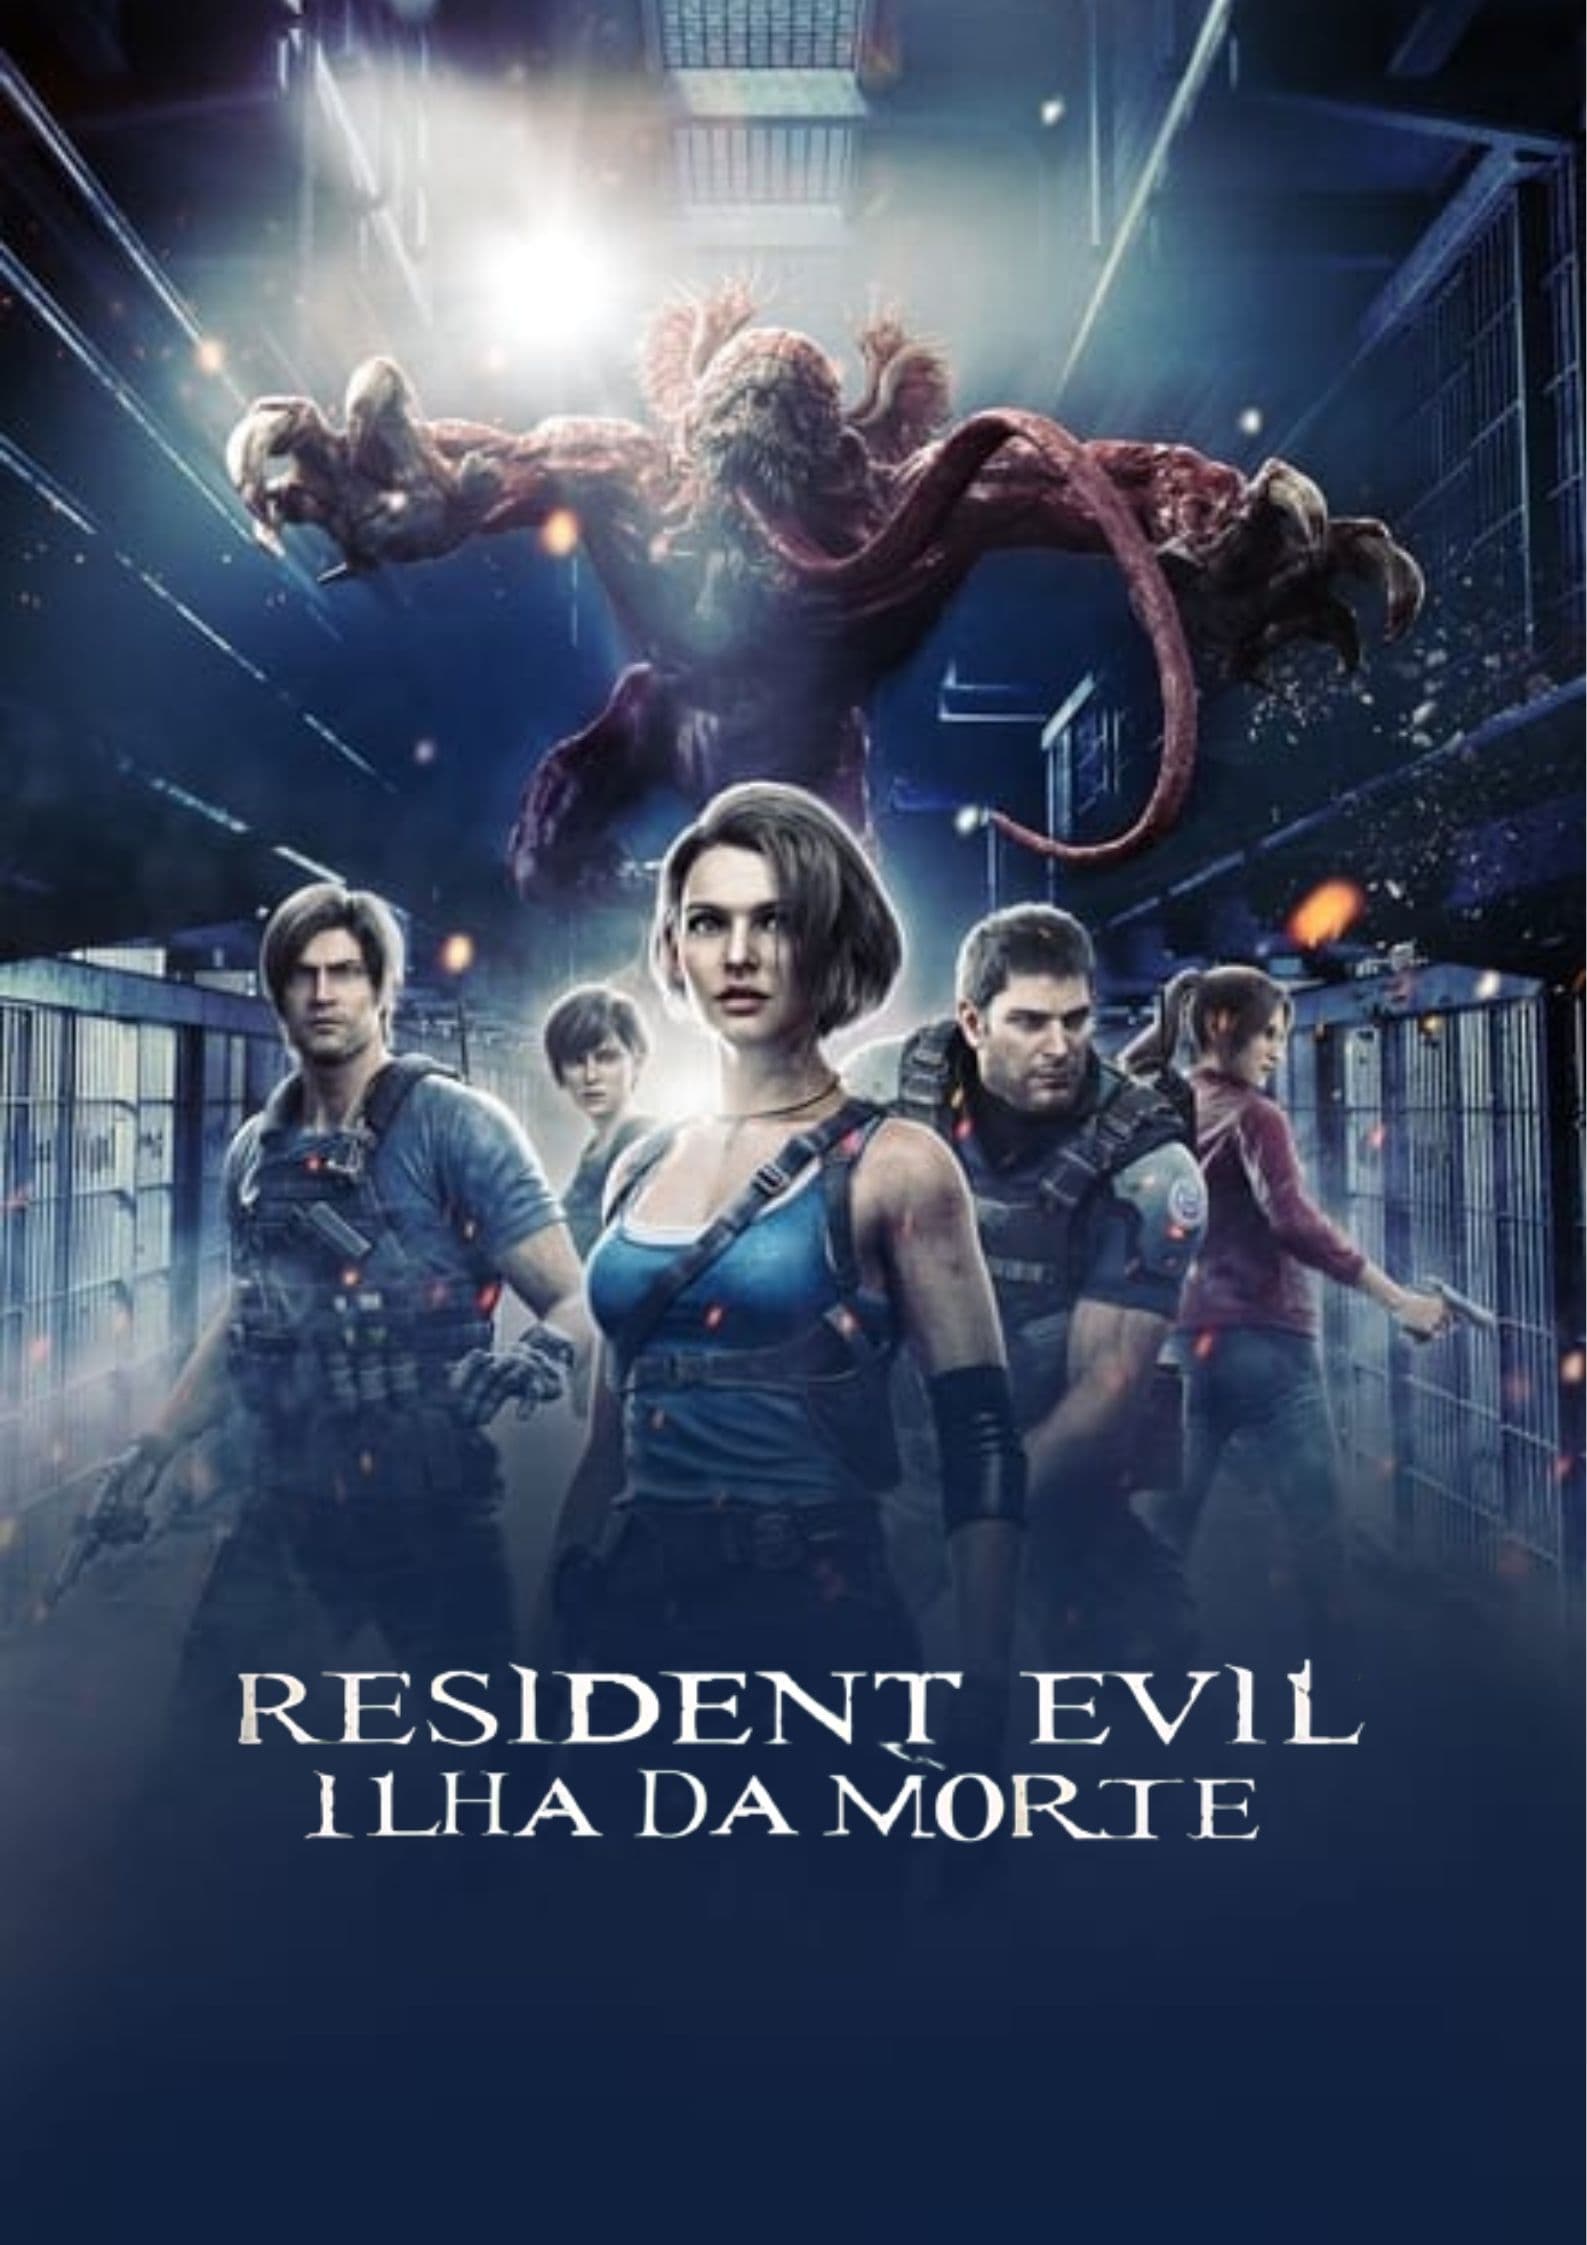 Agora é oficial! Resident Evil: Ilha da Morte chega ao Brasil